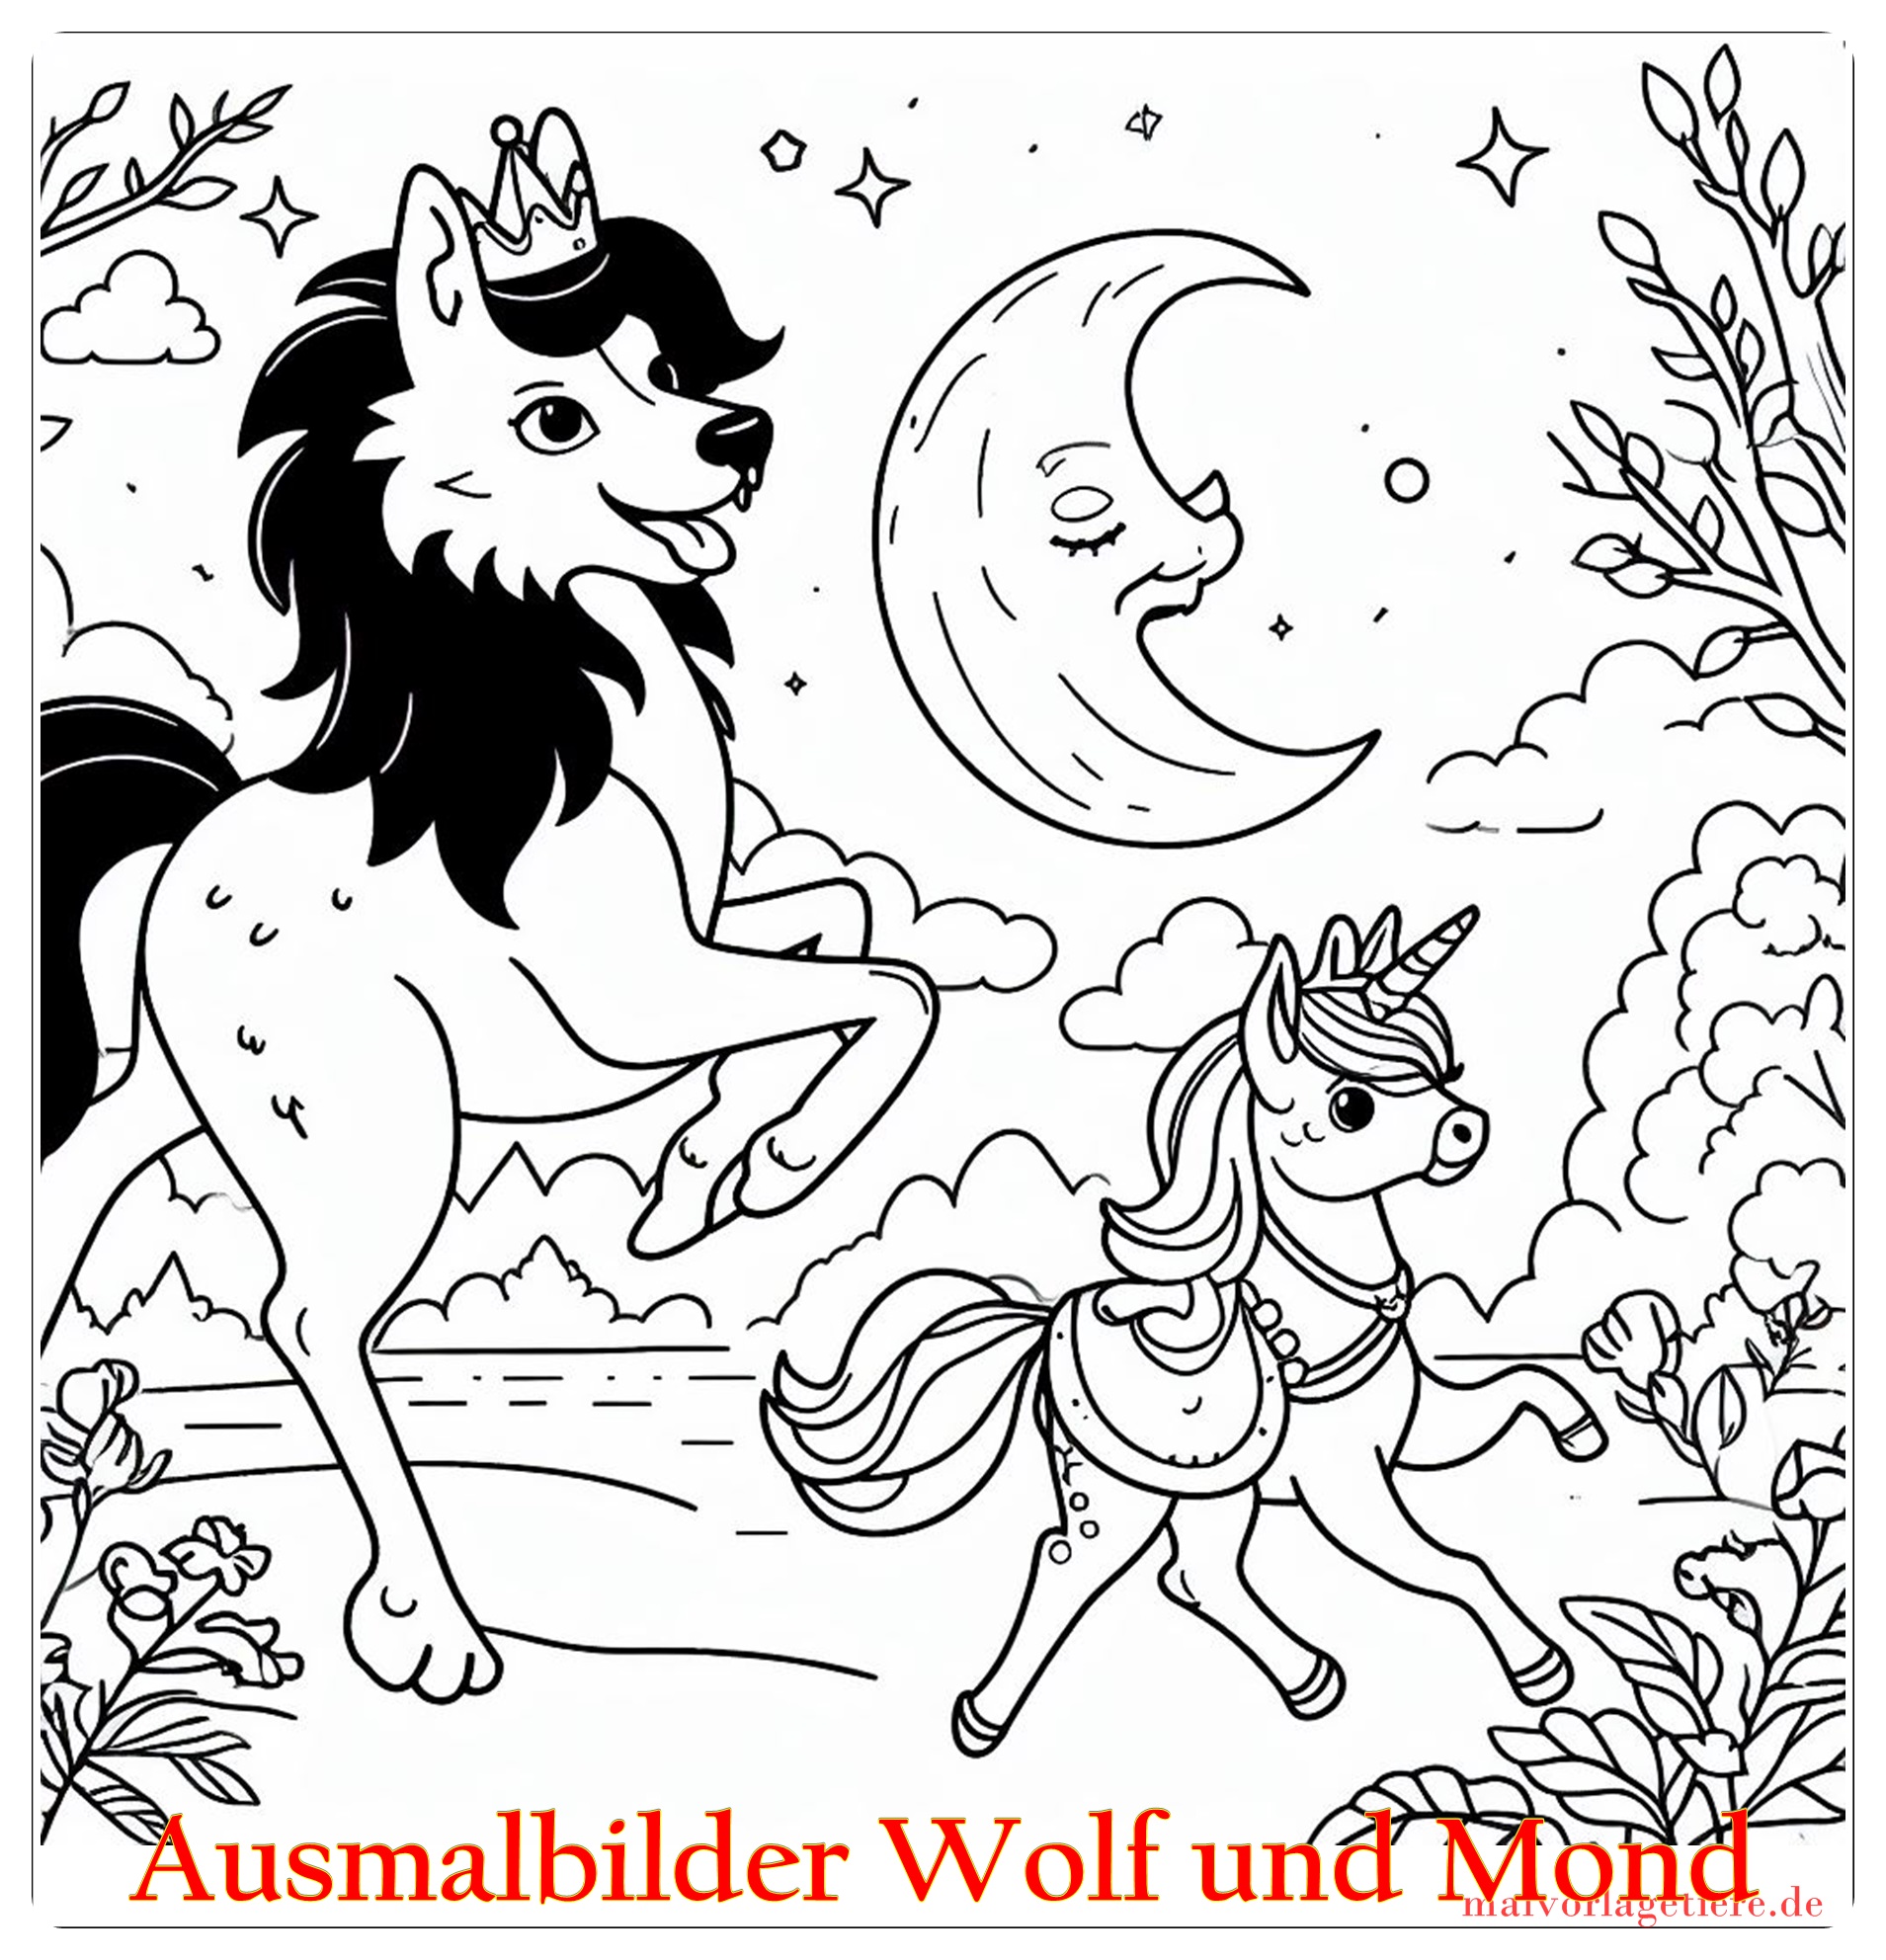 Ausmalbilder Wolf und Mond 03 by malvorlagetiere